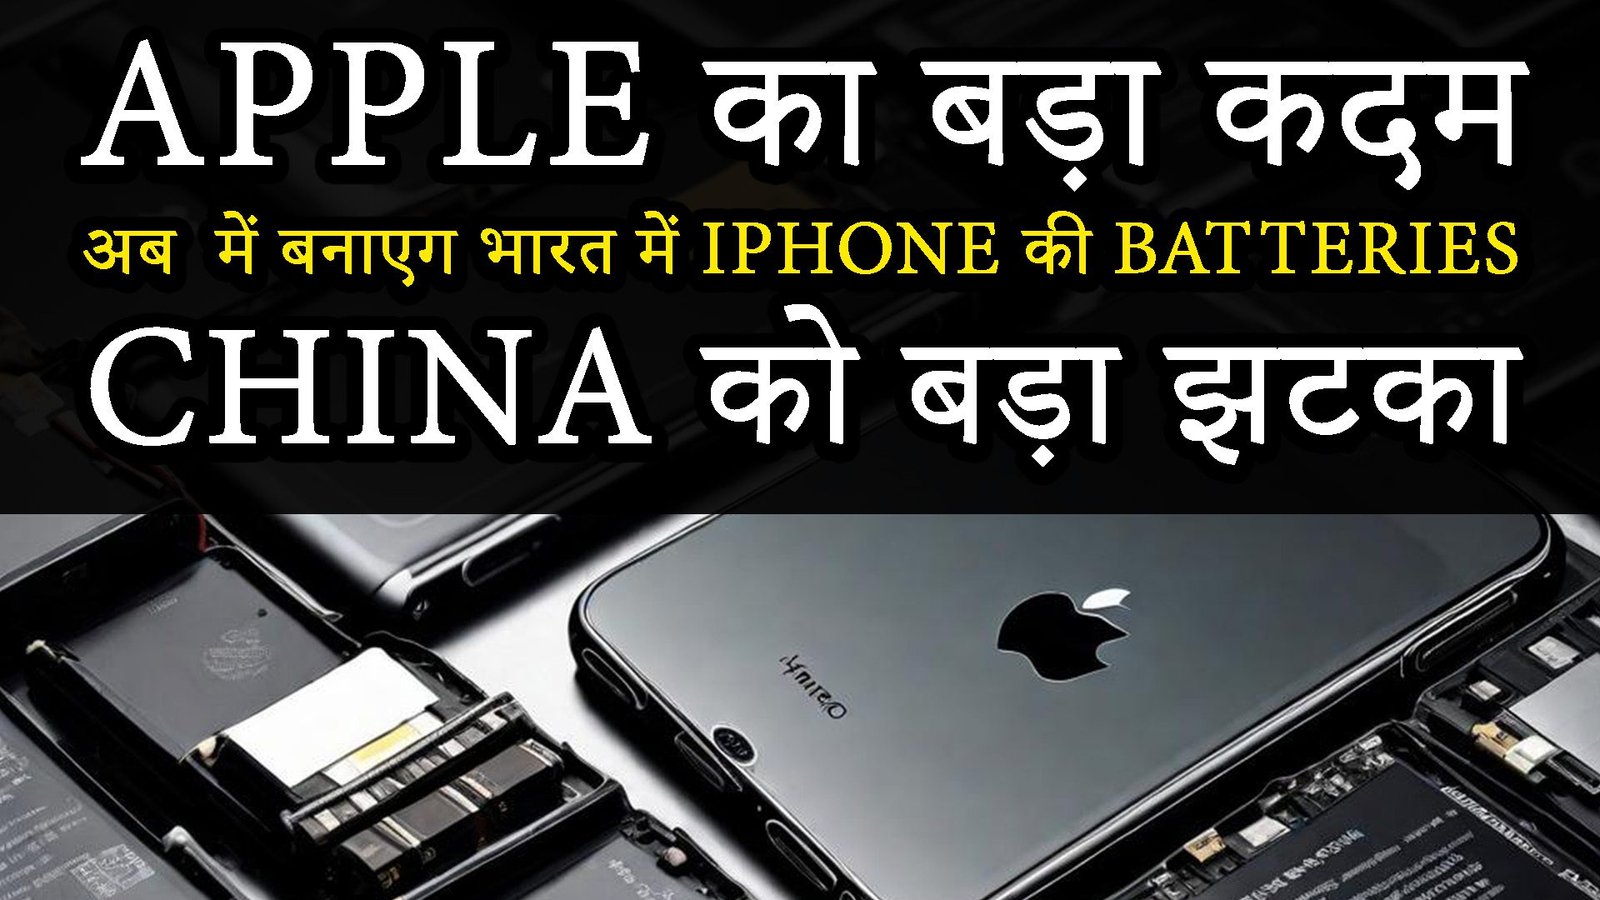 Apple का बड़ा कदम अब में बनाएग भारत में IPhone की batteries: China को बड़ा झटका